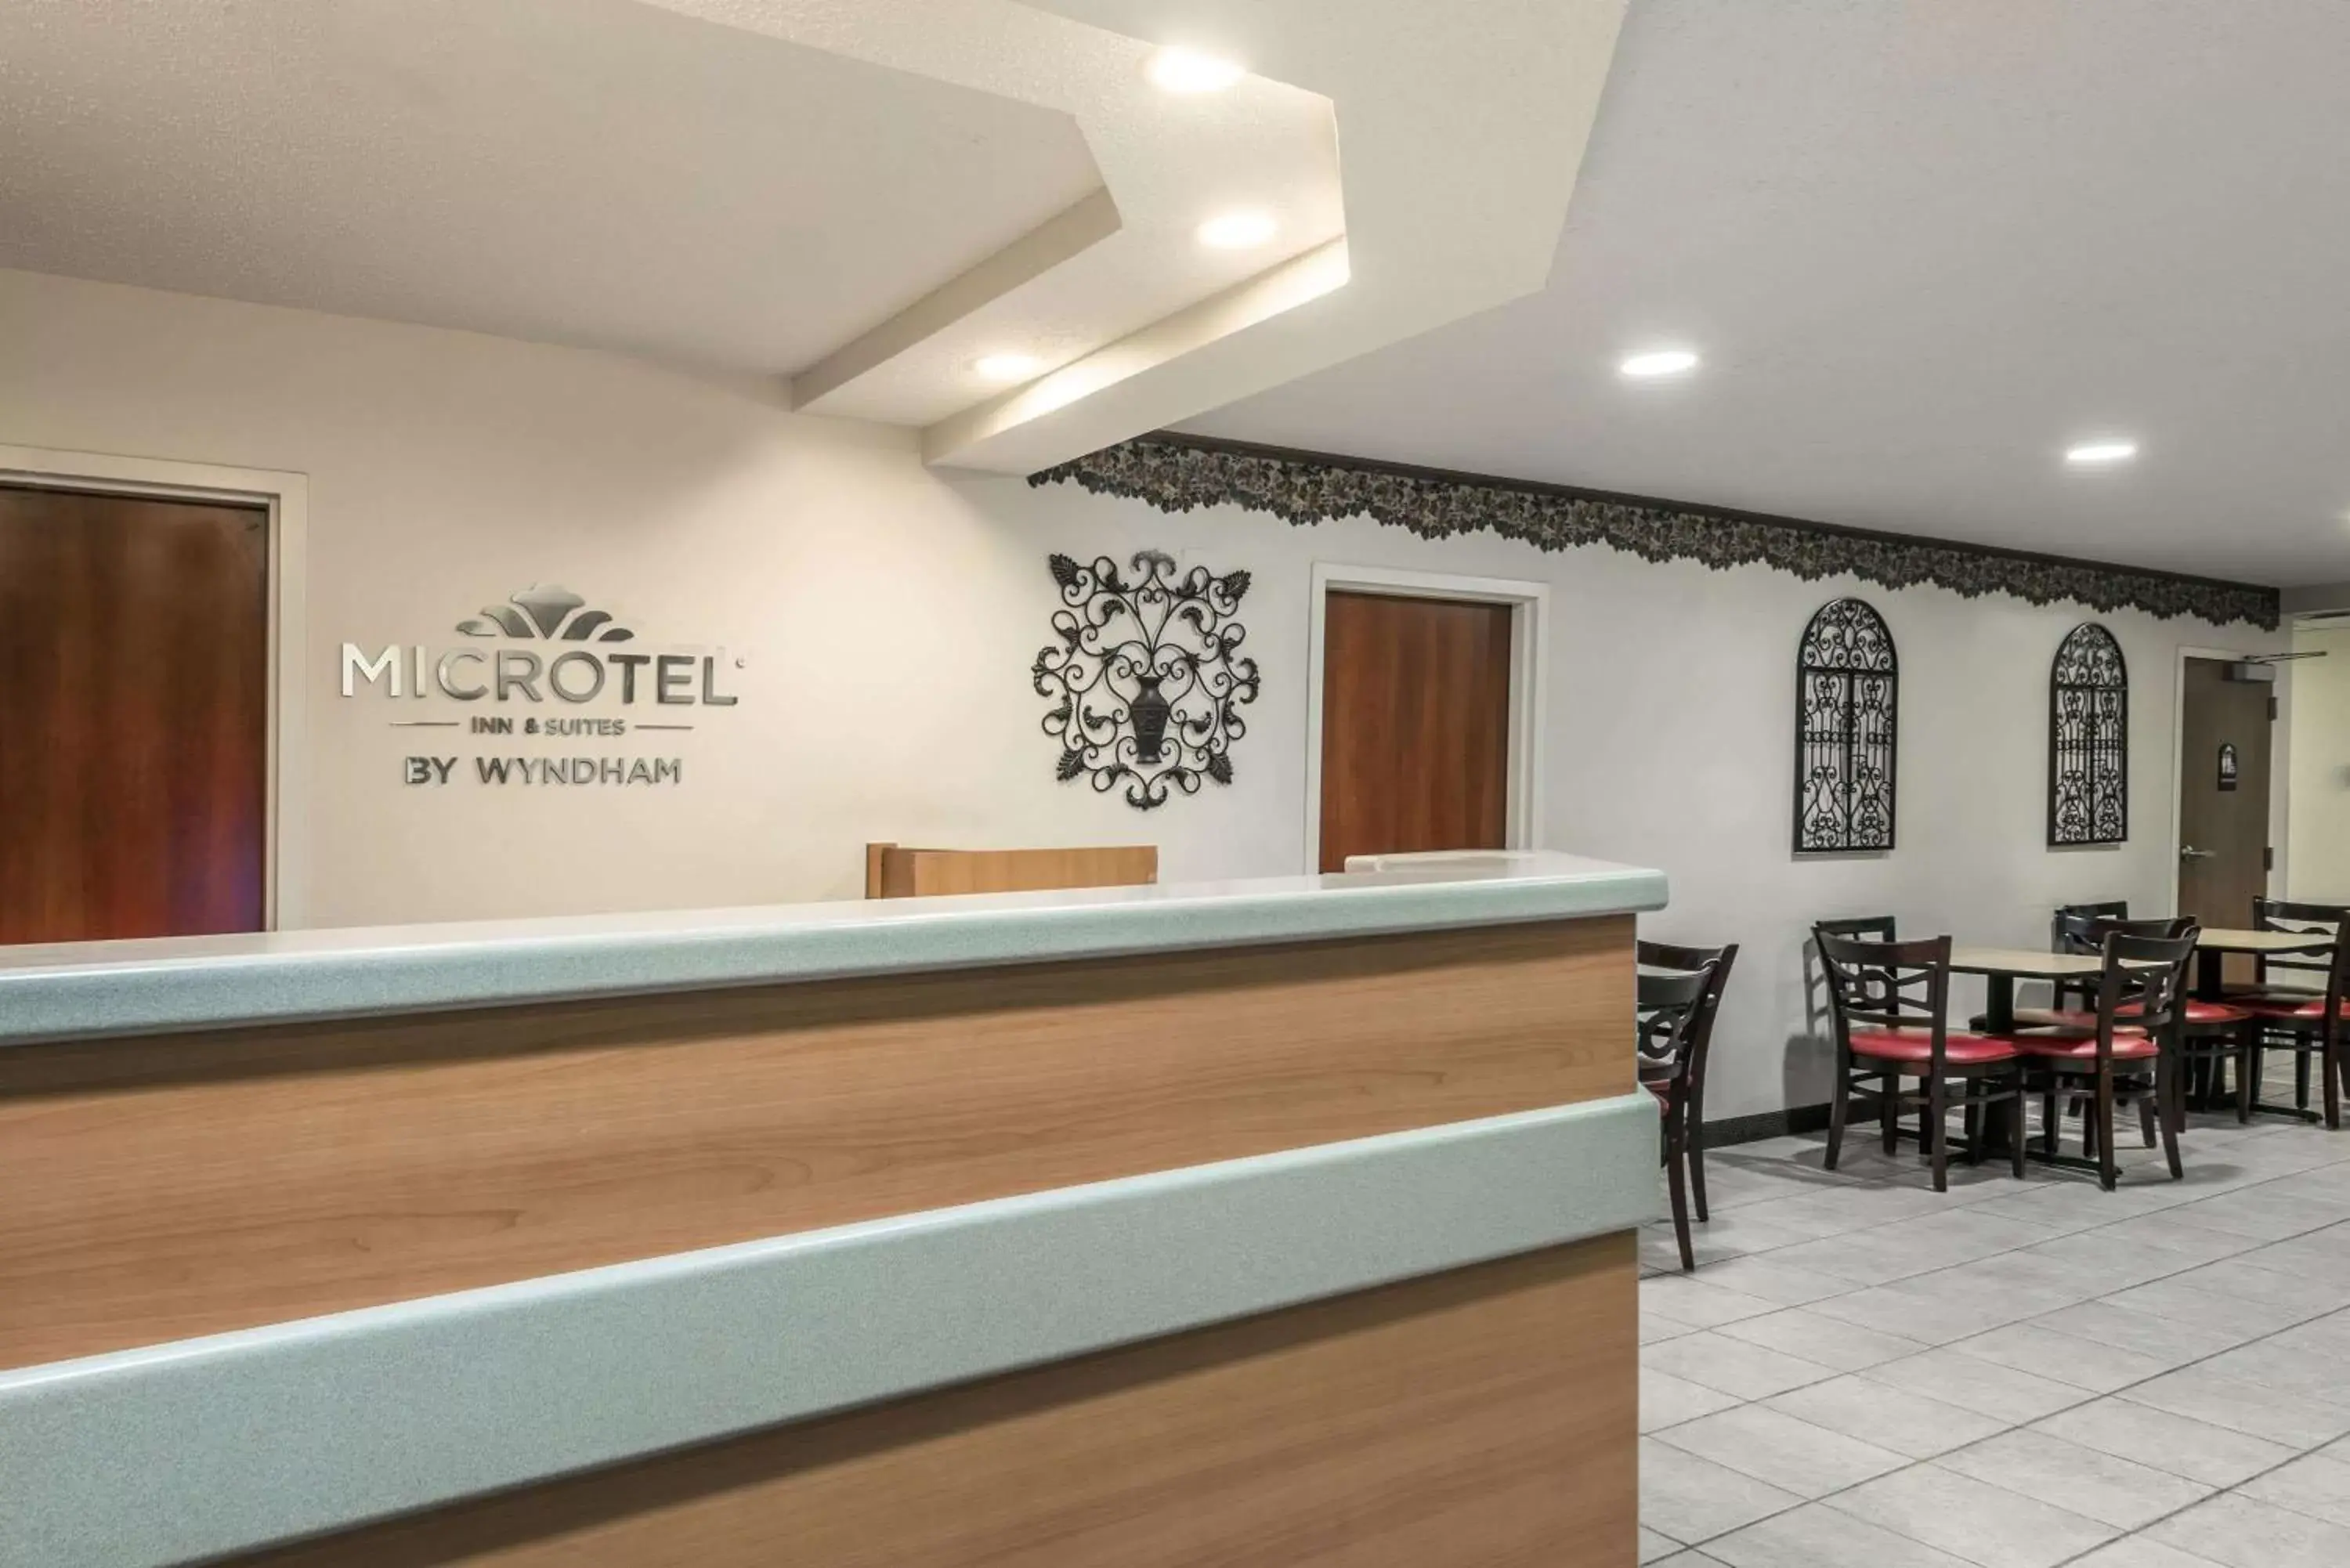 Lobby or reception, Lobby/Reception in Microtel Inn & Suites by Wyndham Auburn